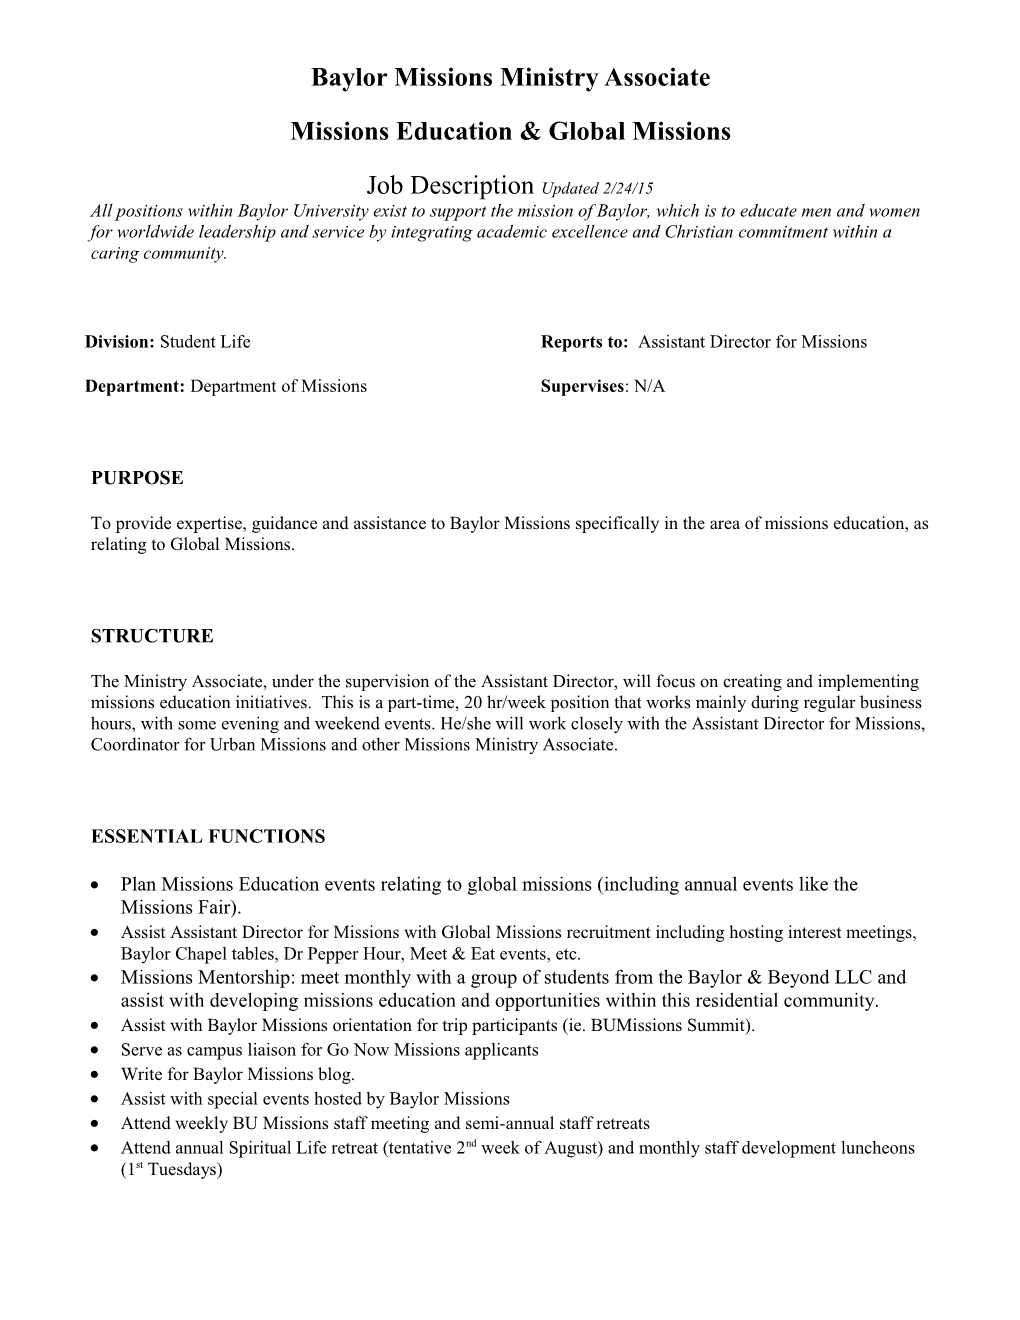 Student Organizations Graduate Assistant Job Description